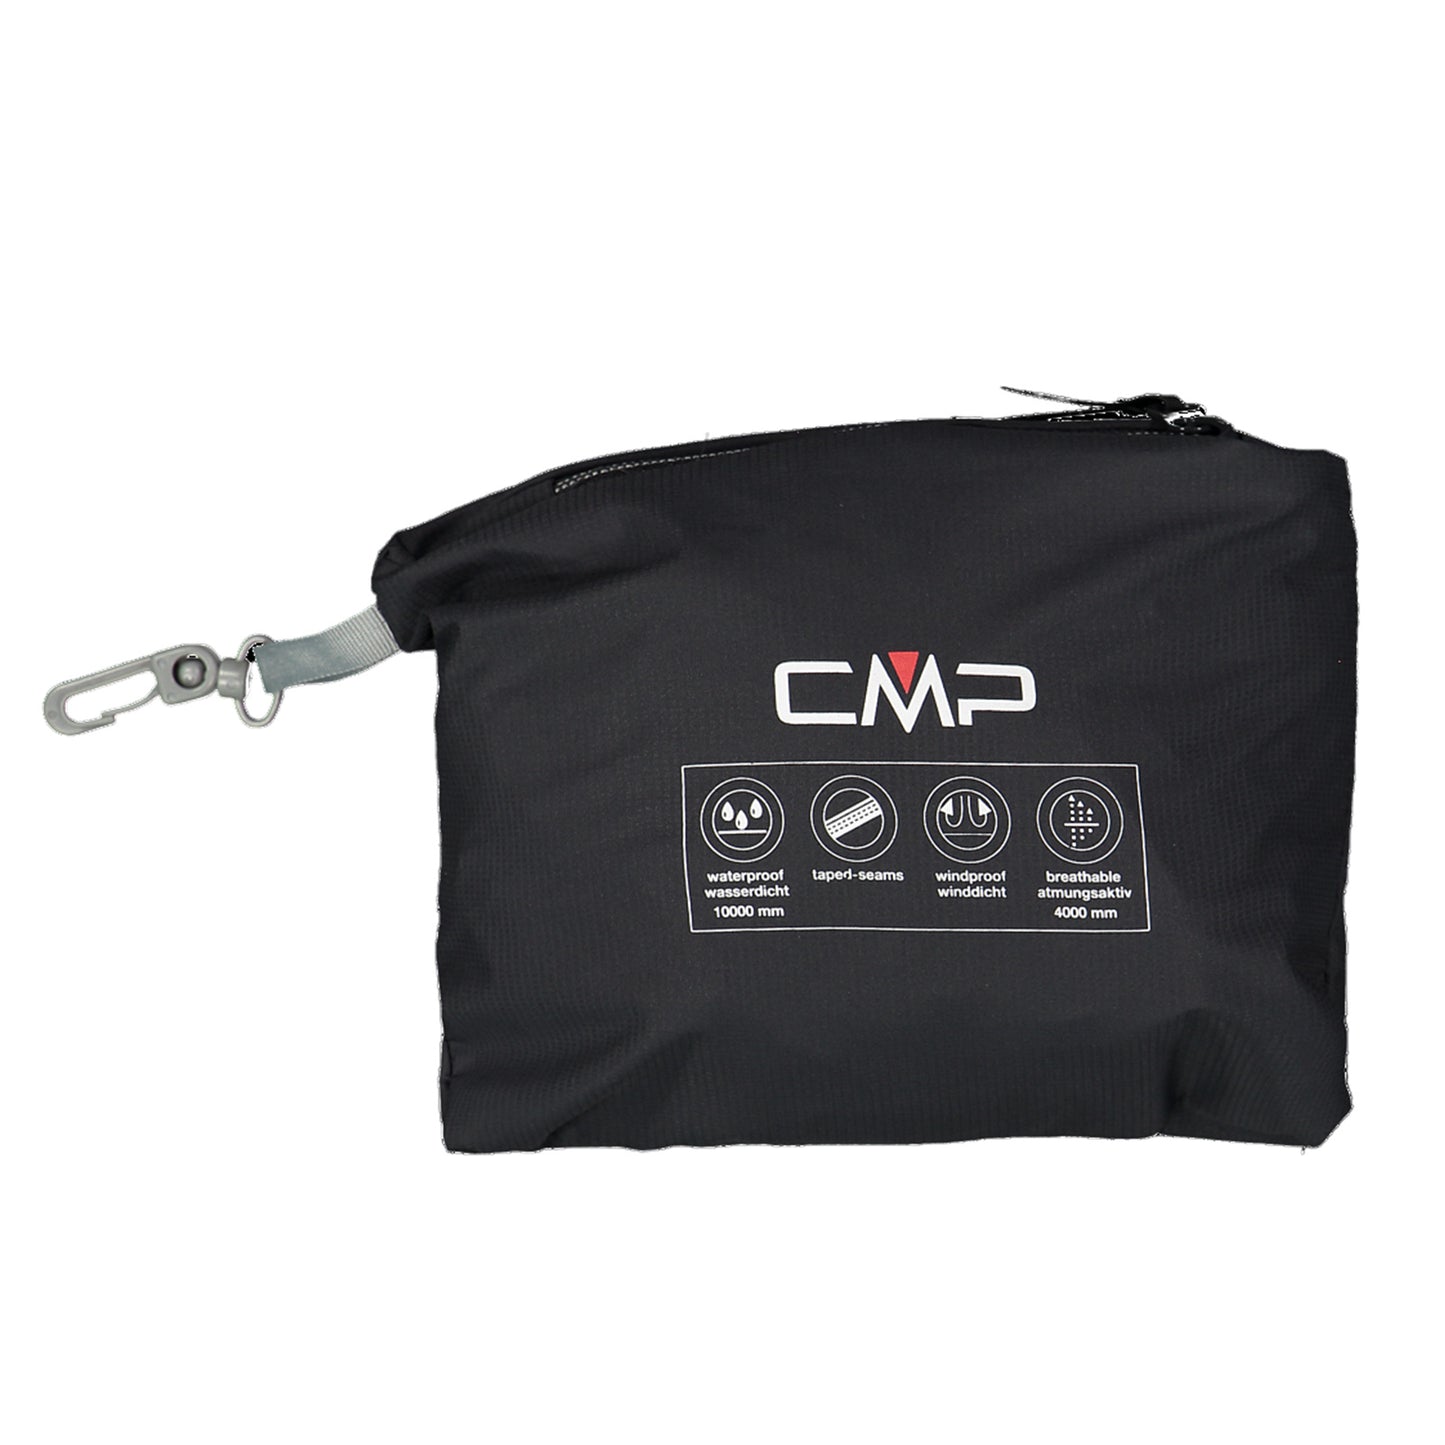 CMP Junior Packable Breathable Waterproof Jacket